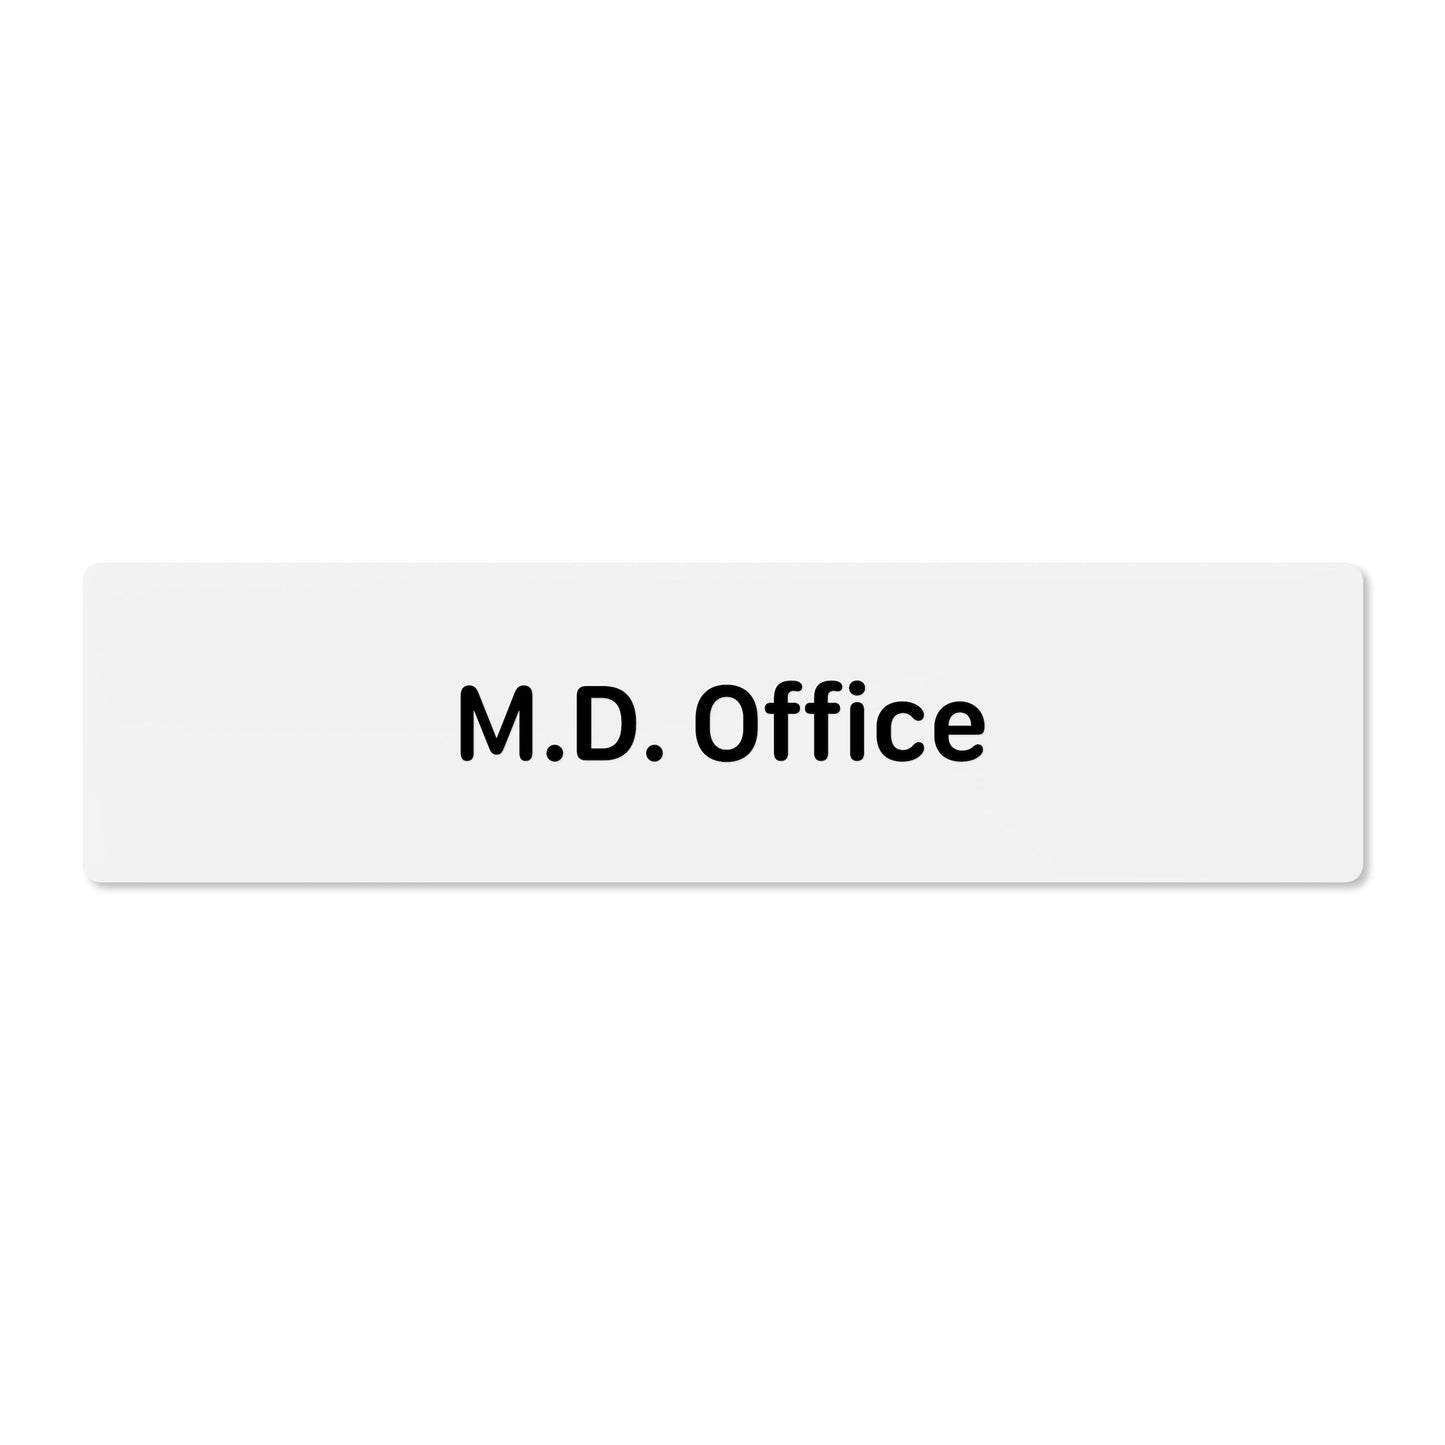 M.D. Office